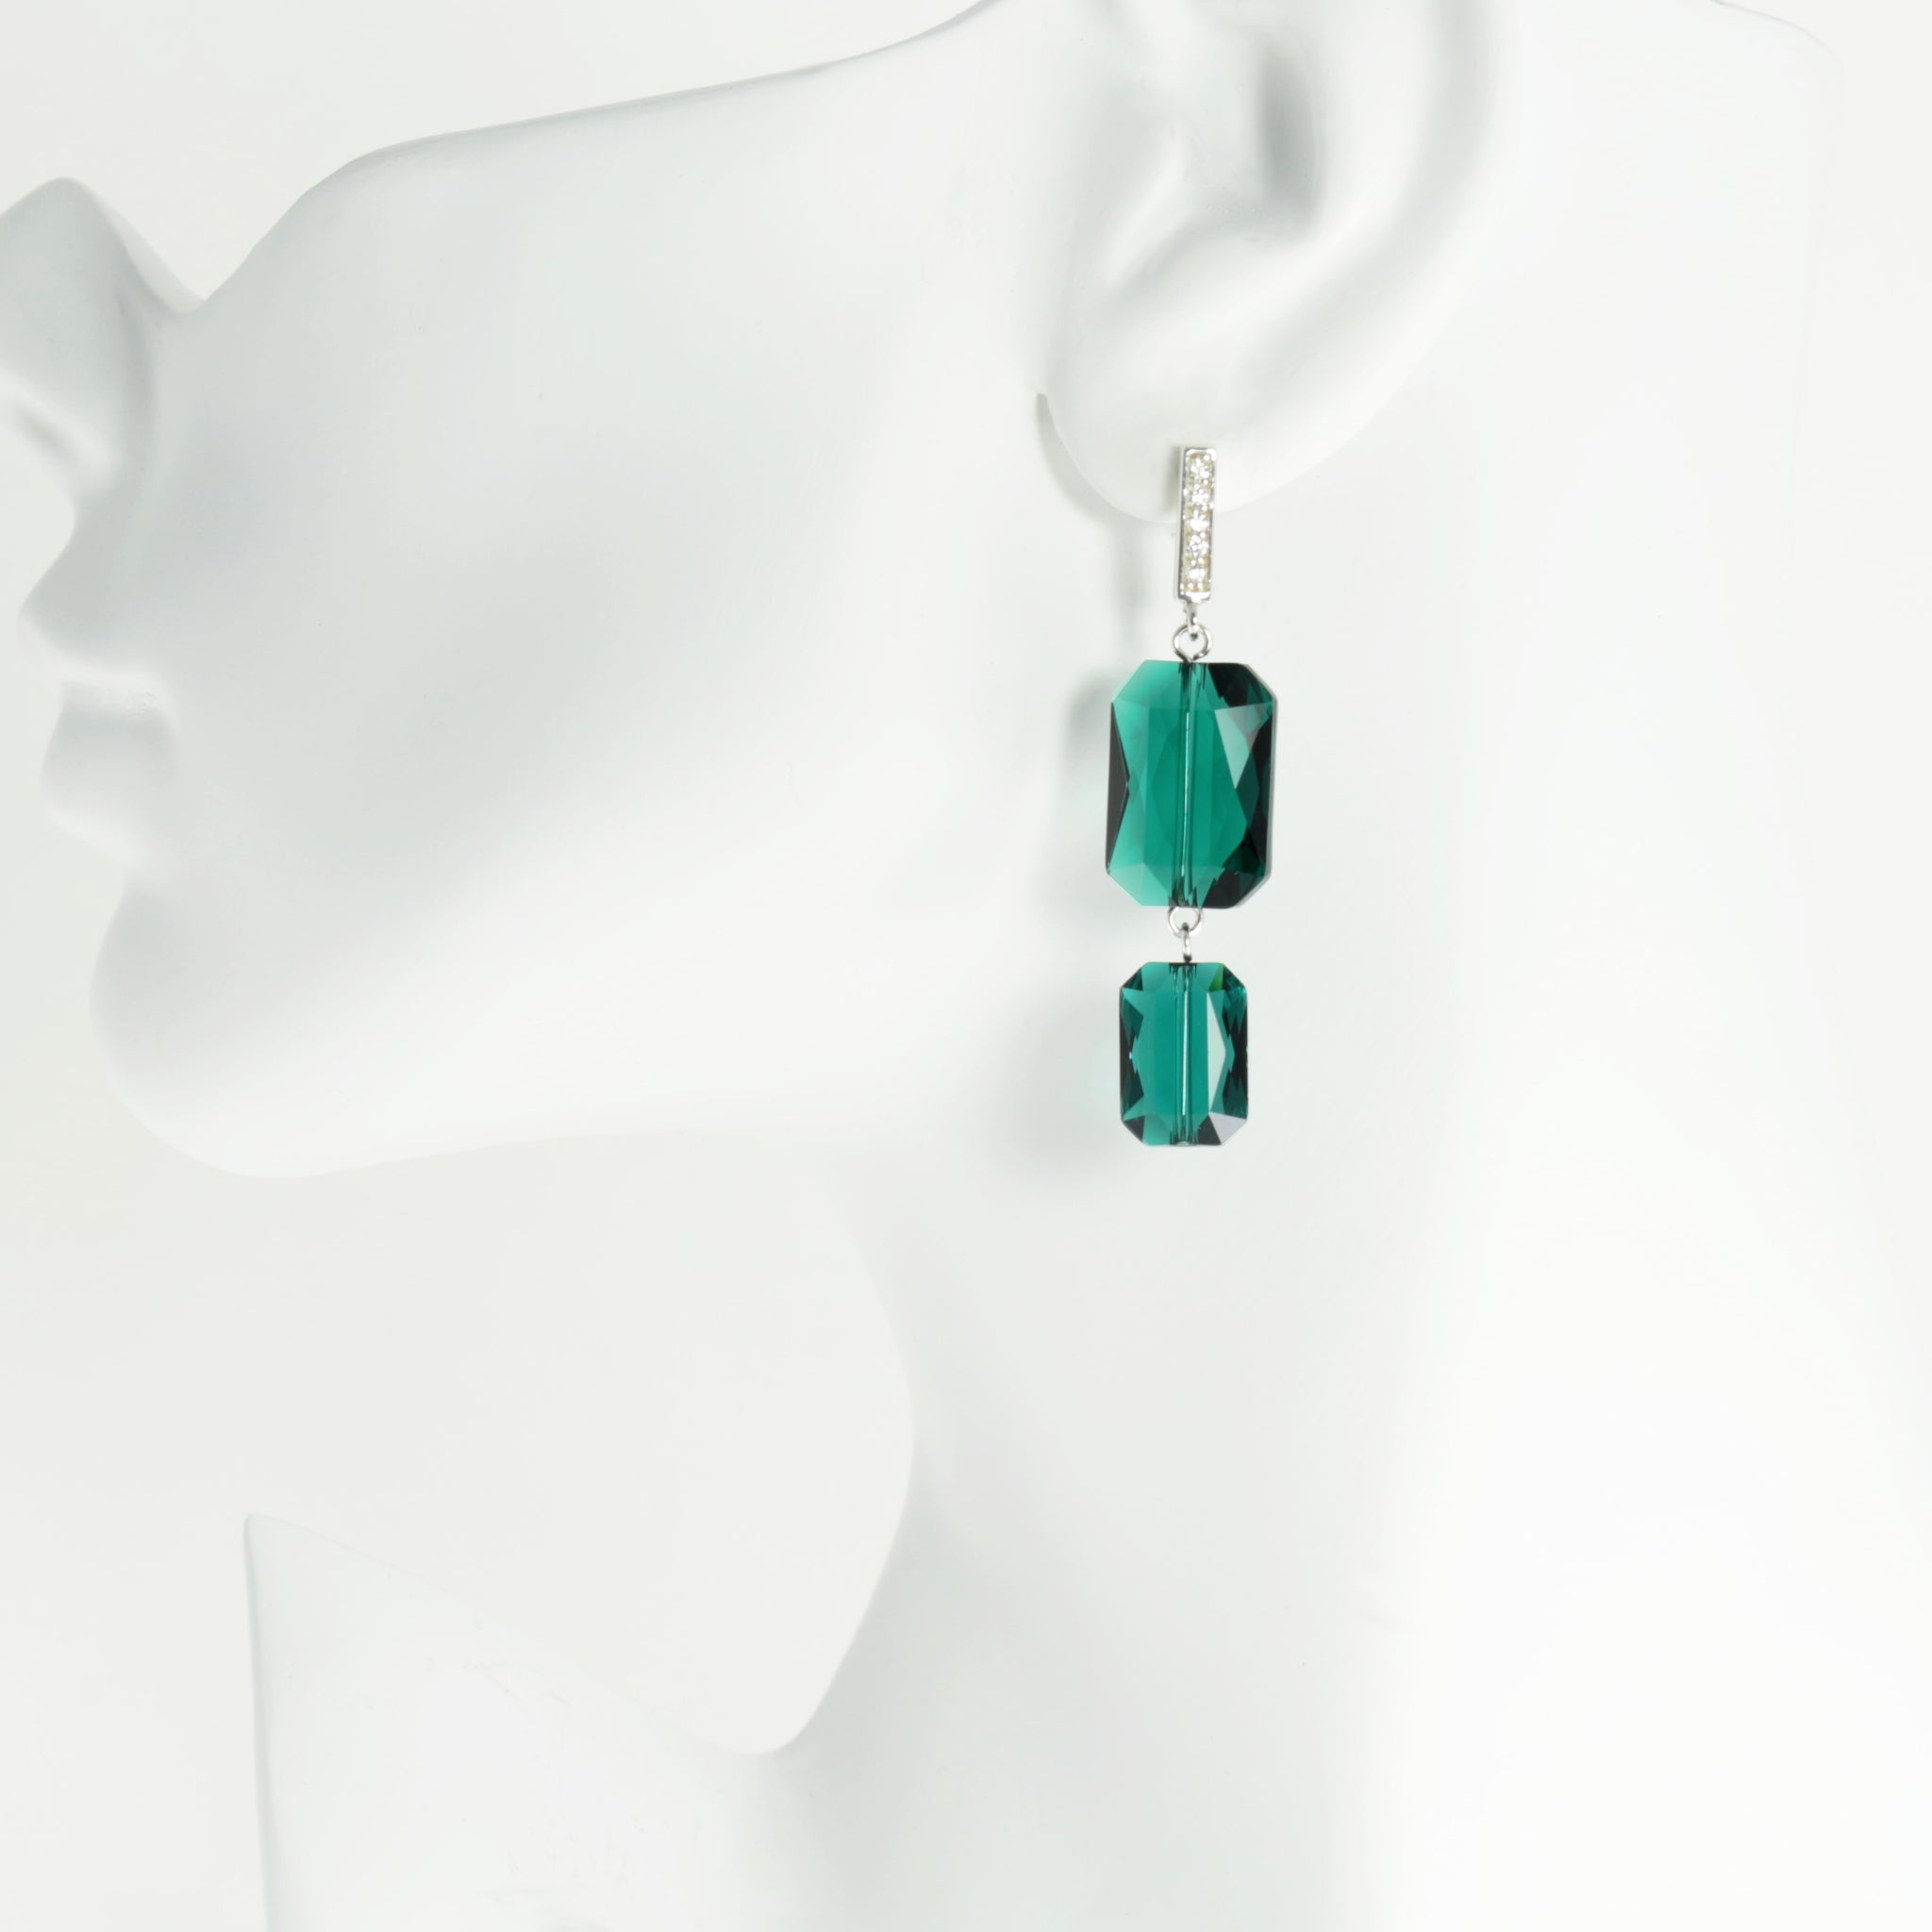 Plaza Earrings in Emerald Green